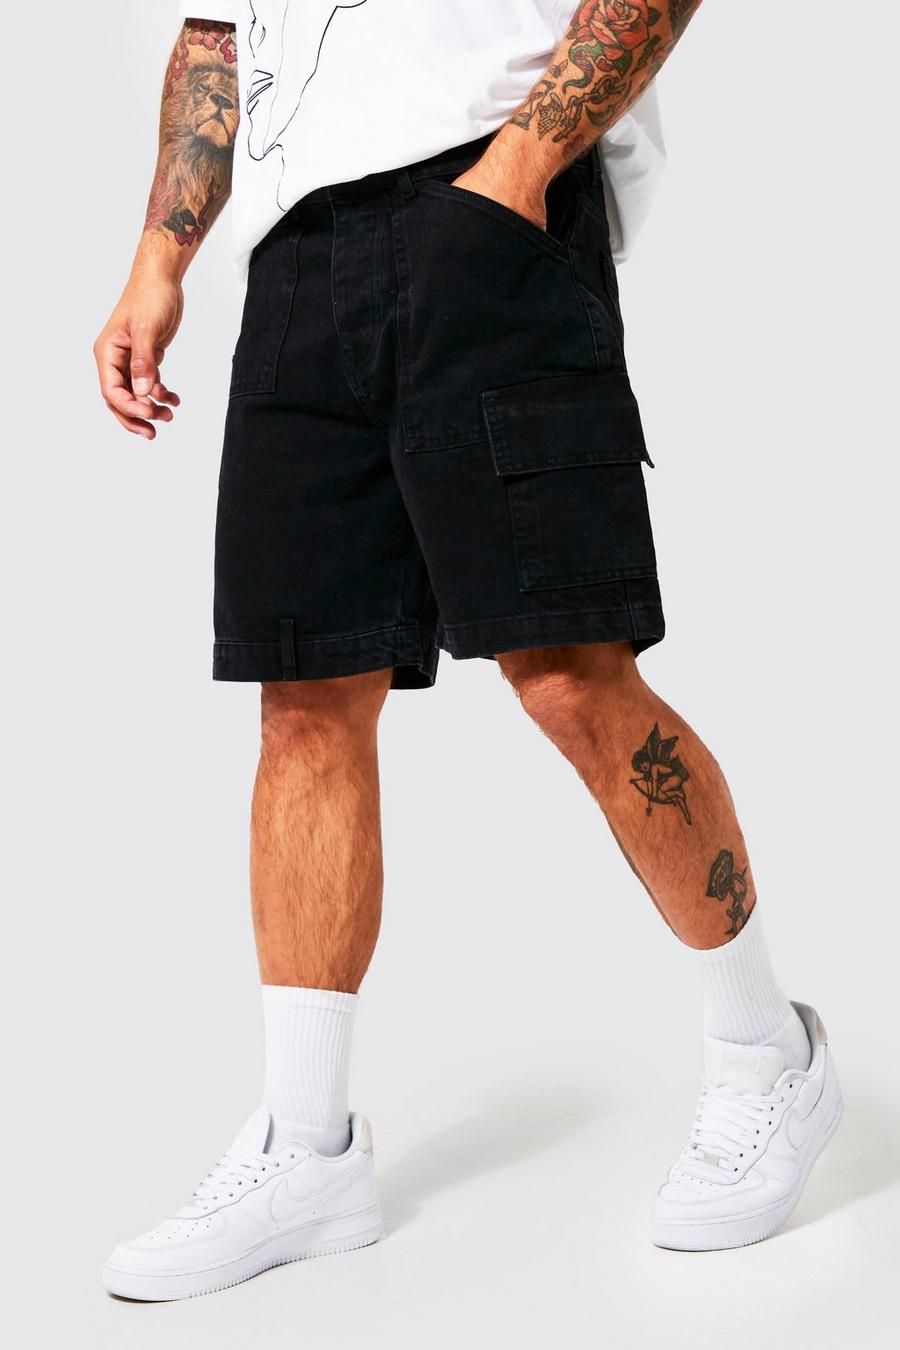 שחור דהוי שורט בד ג'ינס בסגנון נגרים בגזרה משוחררת עם פאנל